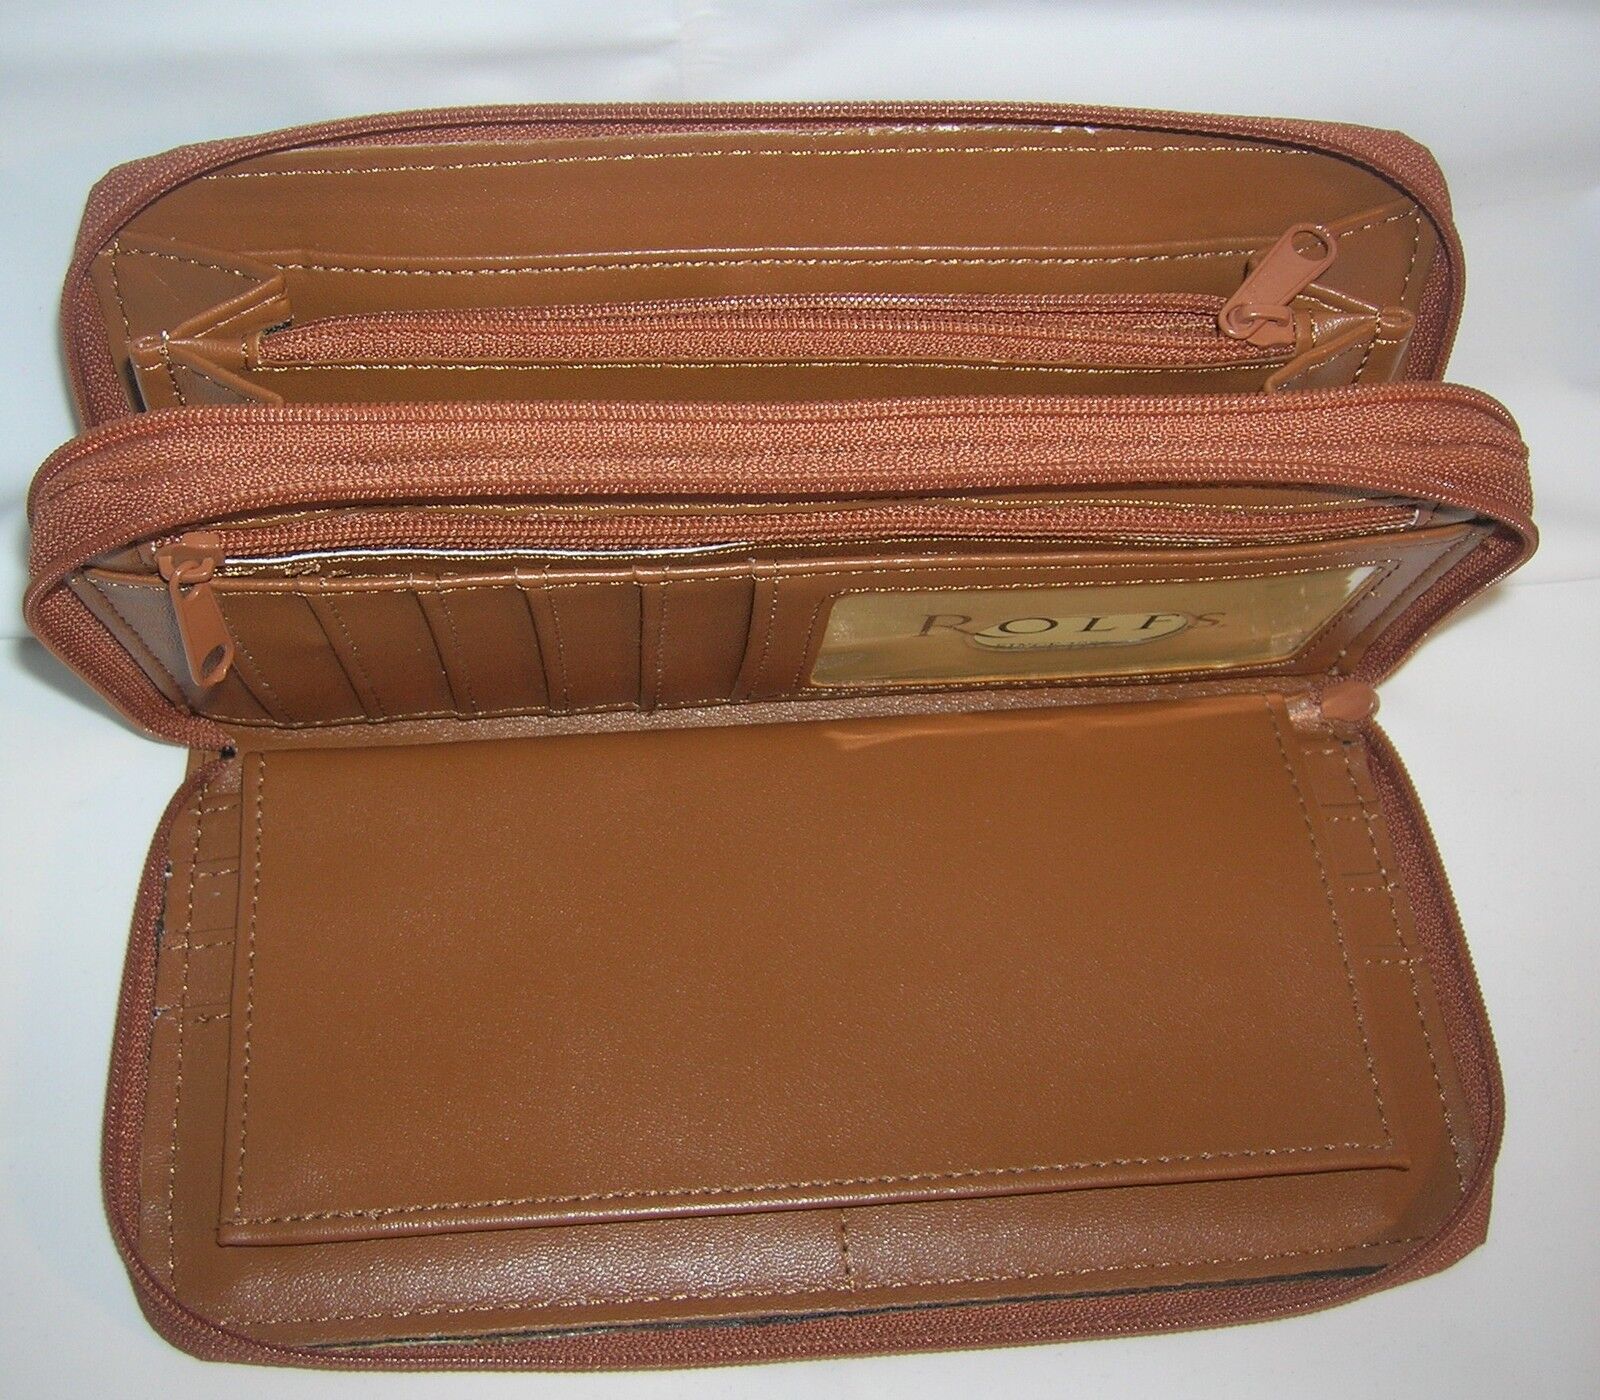 Rolfs Double Zip Around Checkbook Organizer Wallet Color Beige Soft Leather | eBay